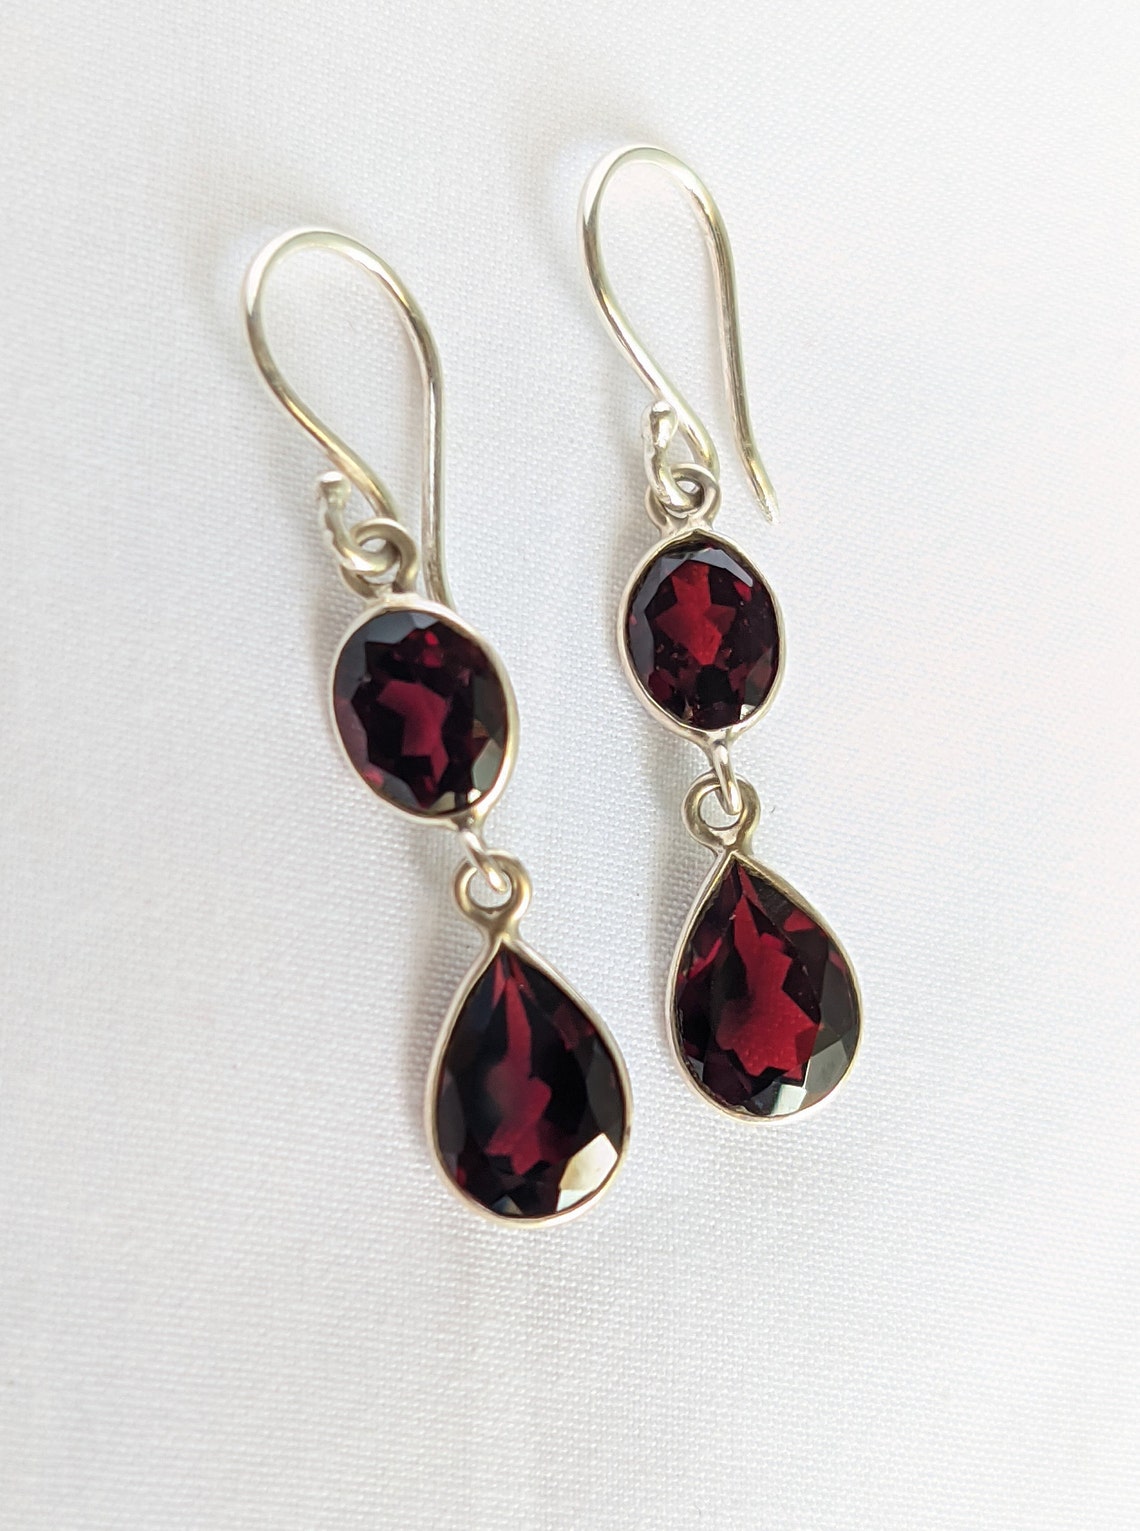 Red Garnet Dangle Earrings 925 Sterling Silver Two Stone - Etsy UK